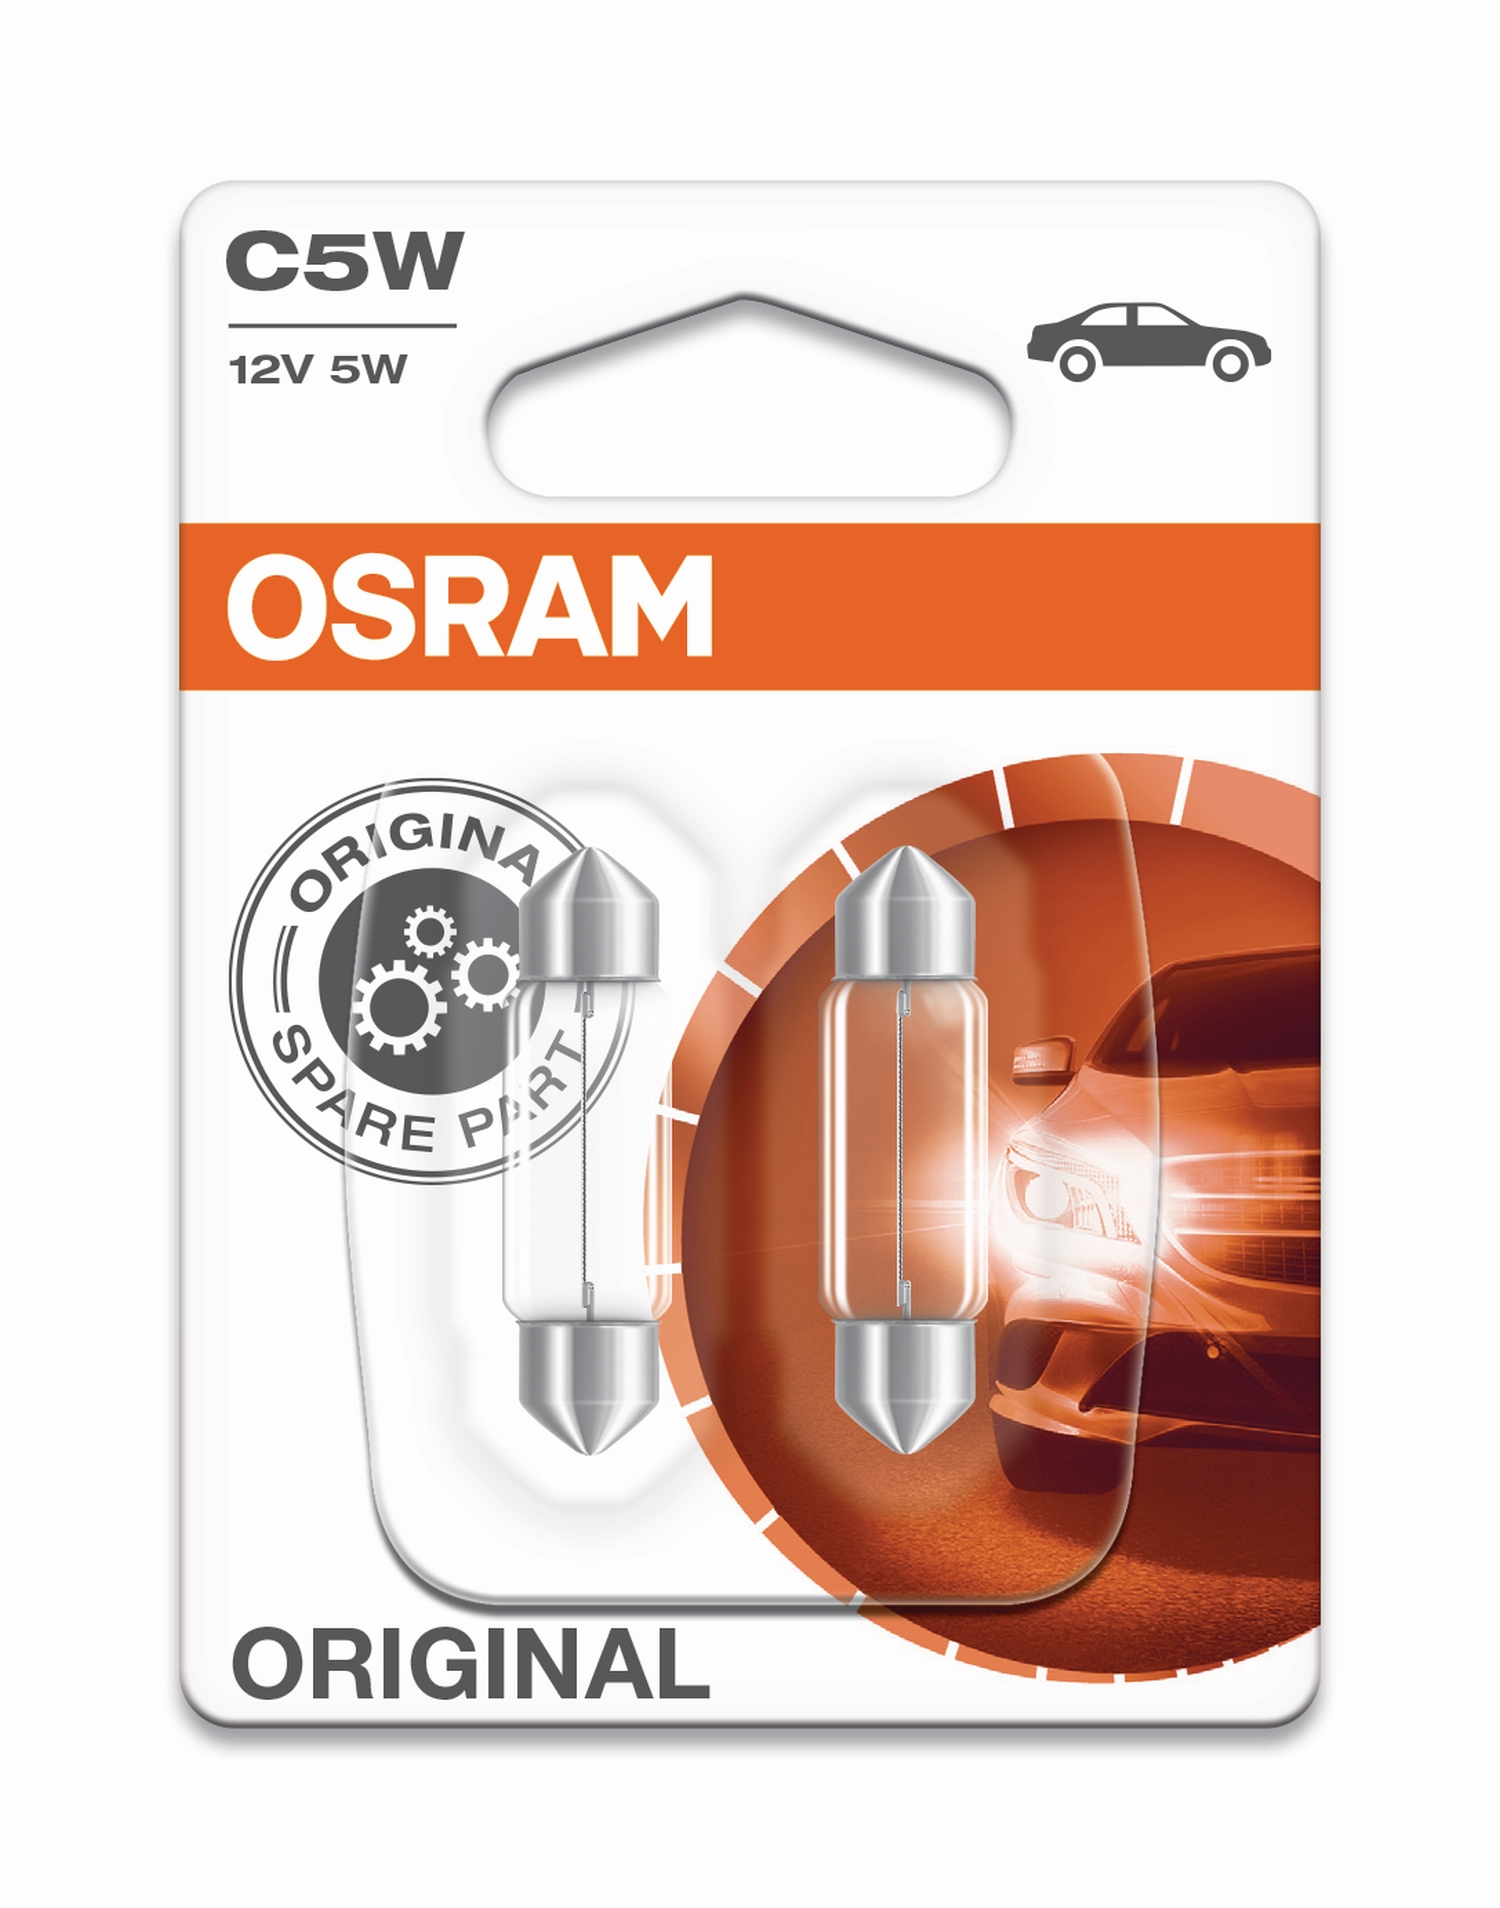 OSRAM Schlusslicht (Soffitte) C5W-12V-5W-SV8,5-8